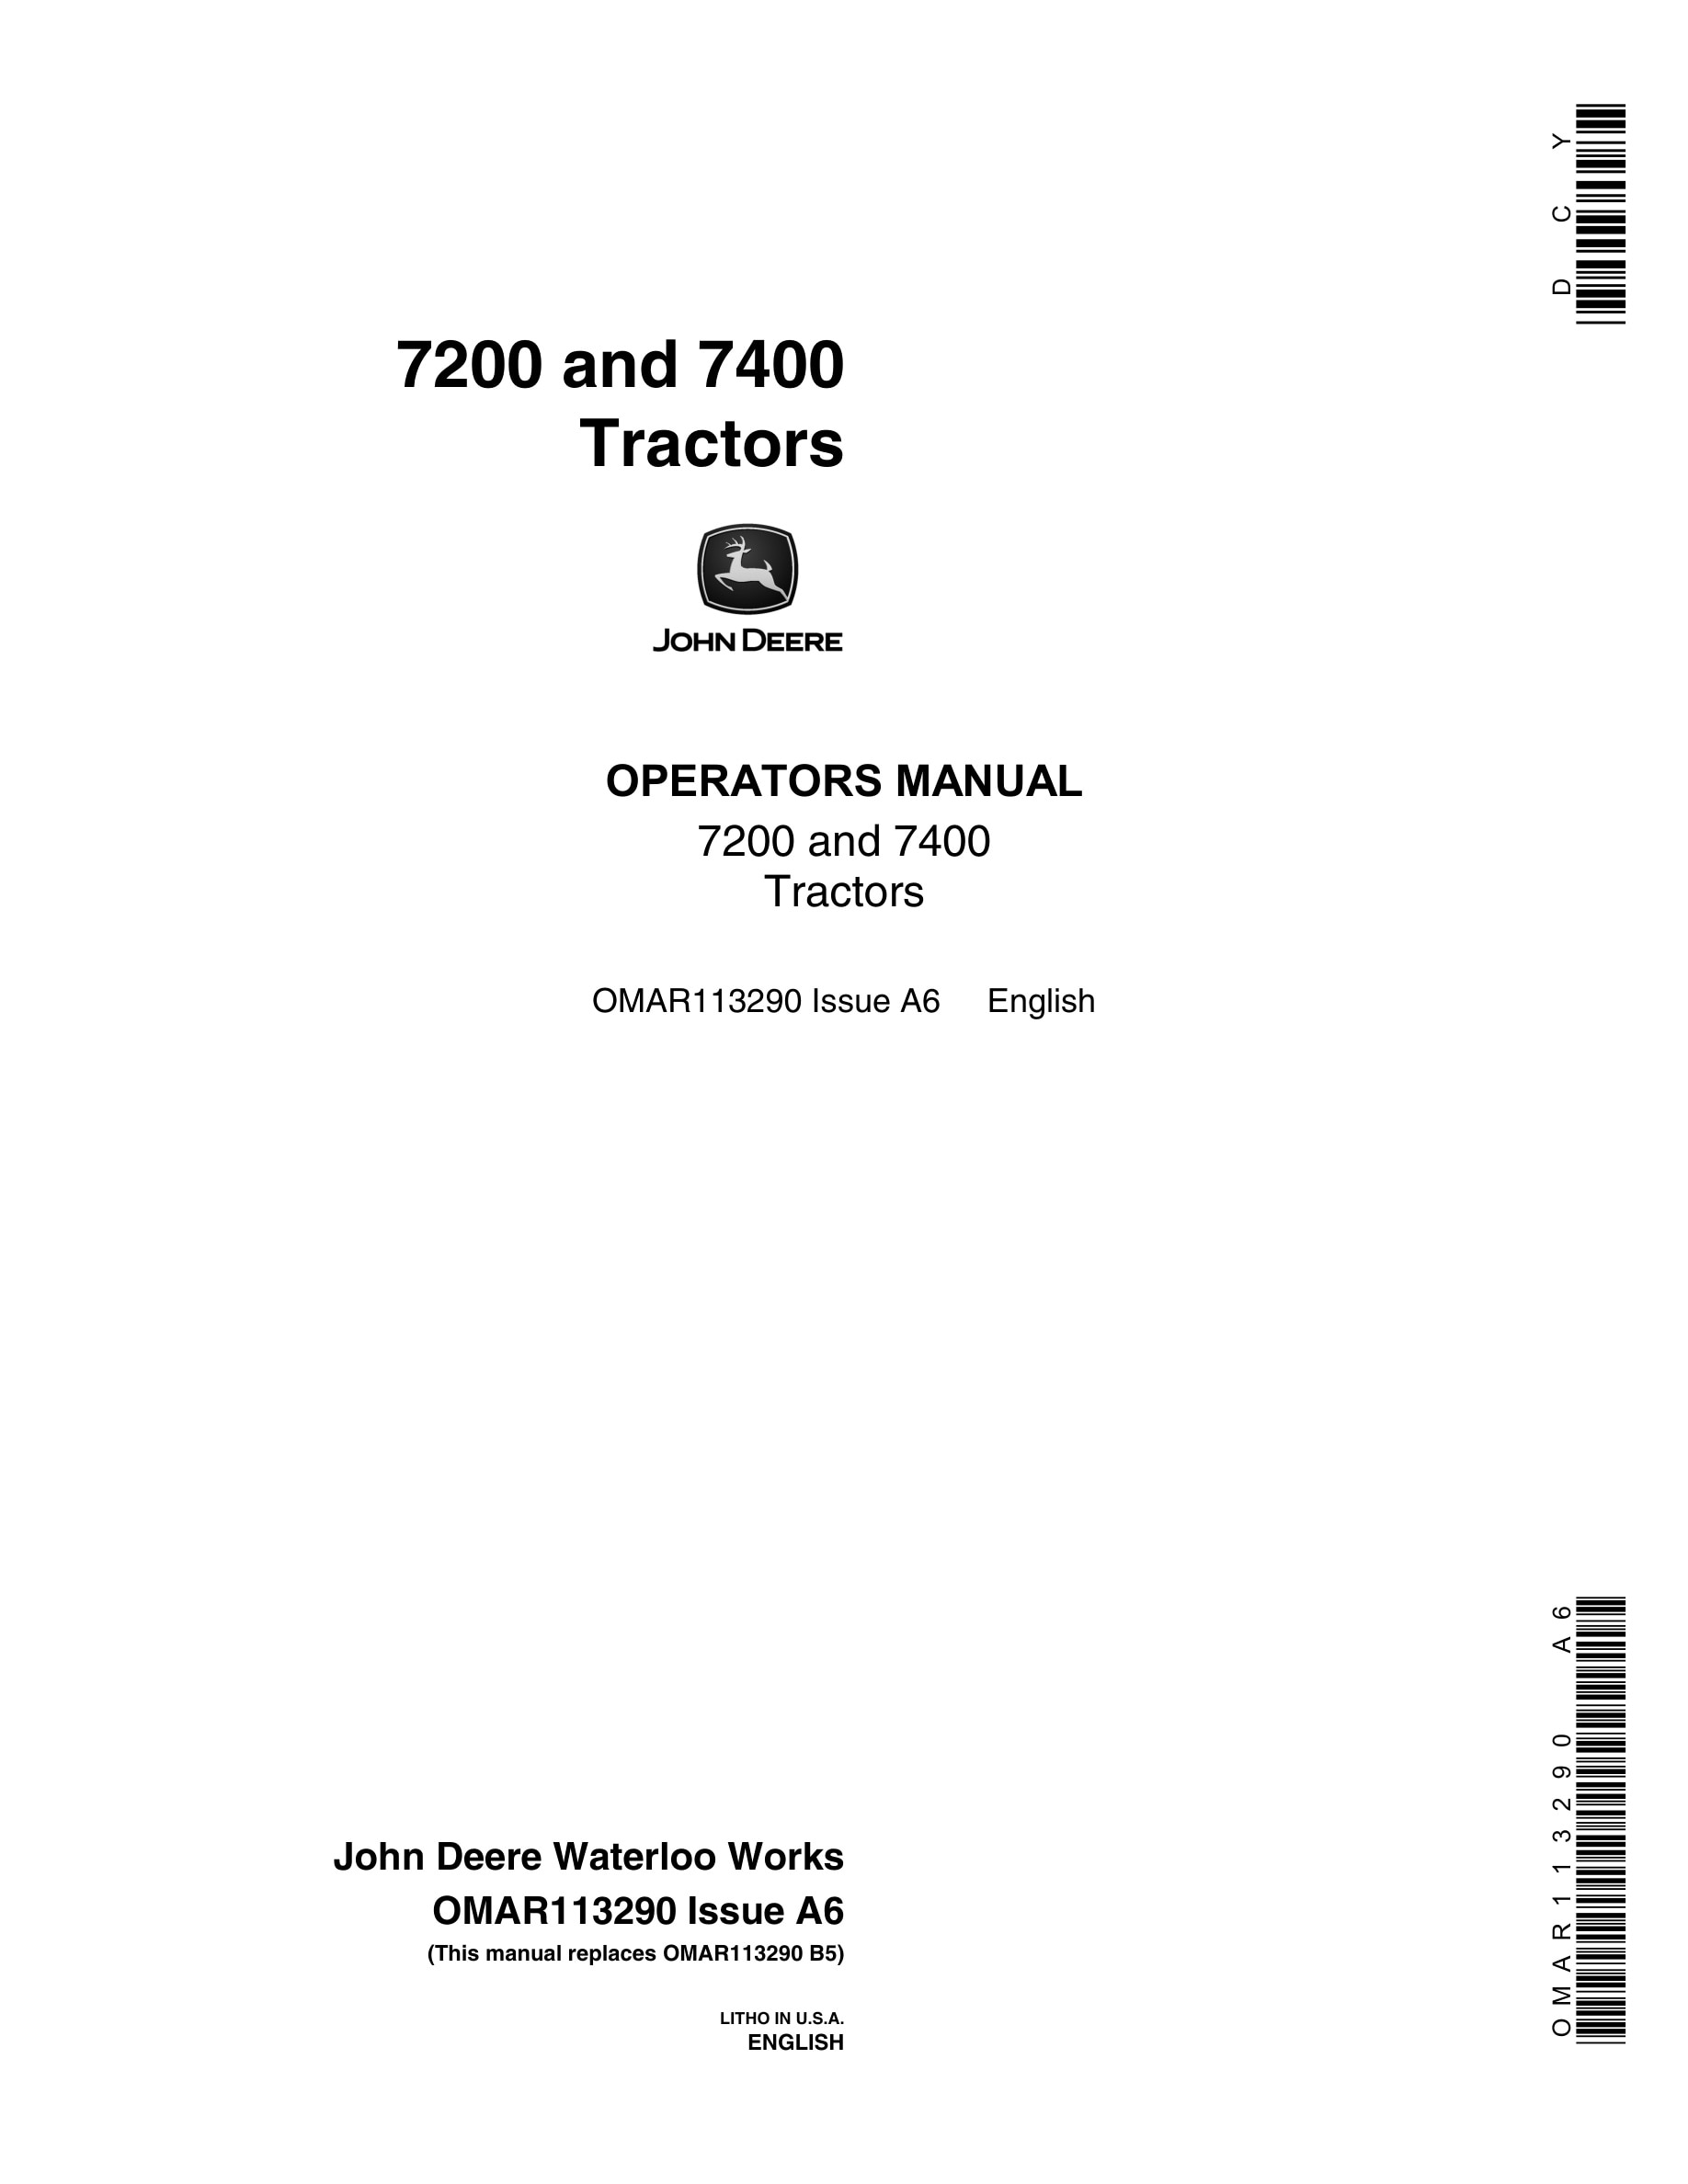 John Deere 7200 and 7400 Tractor Operator Manual OMAR113290-1